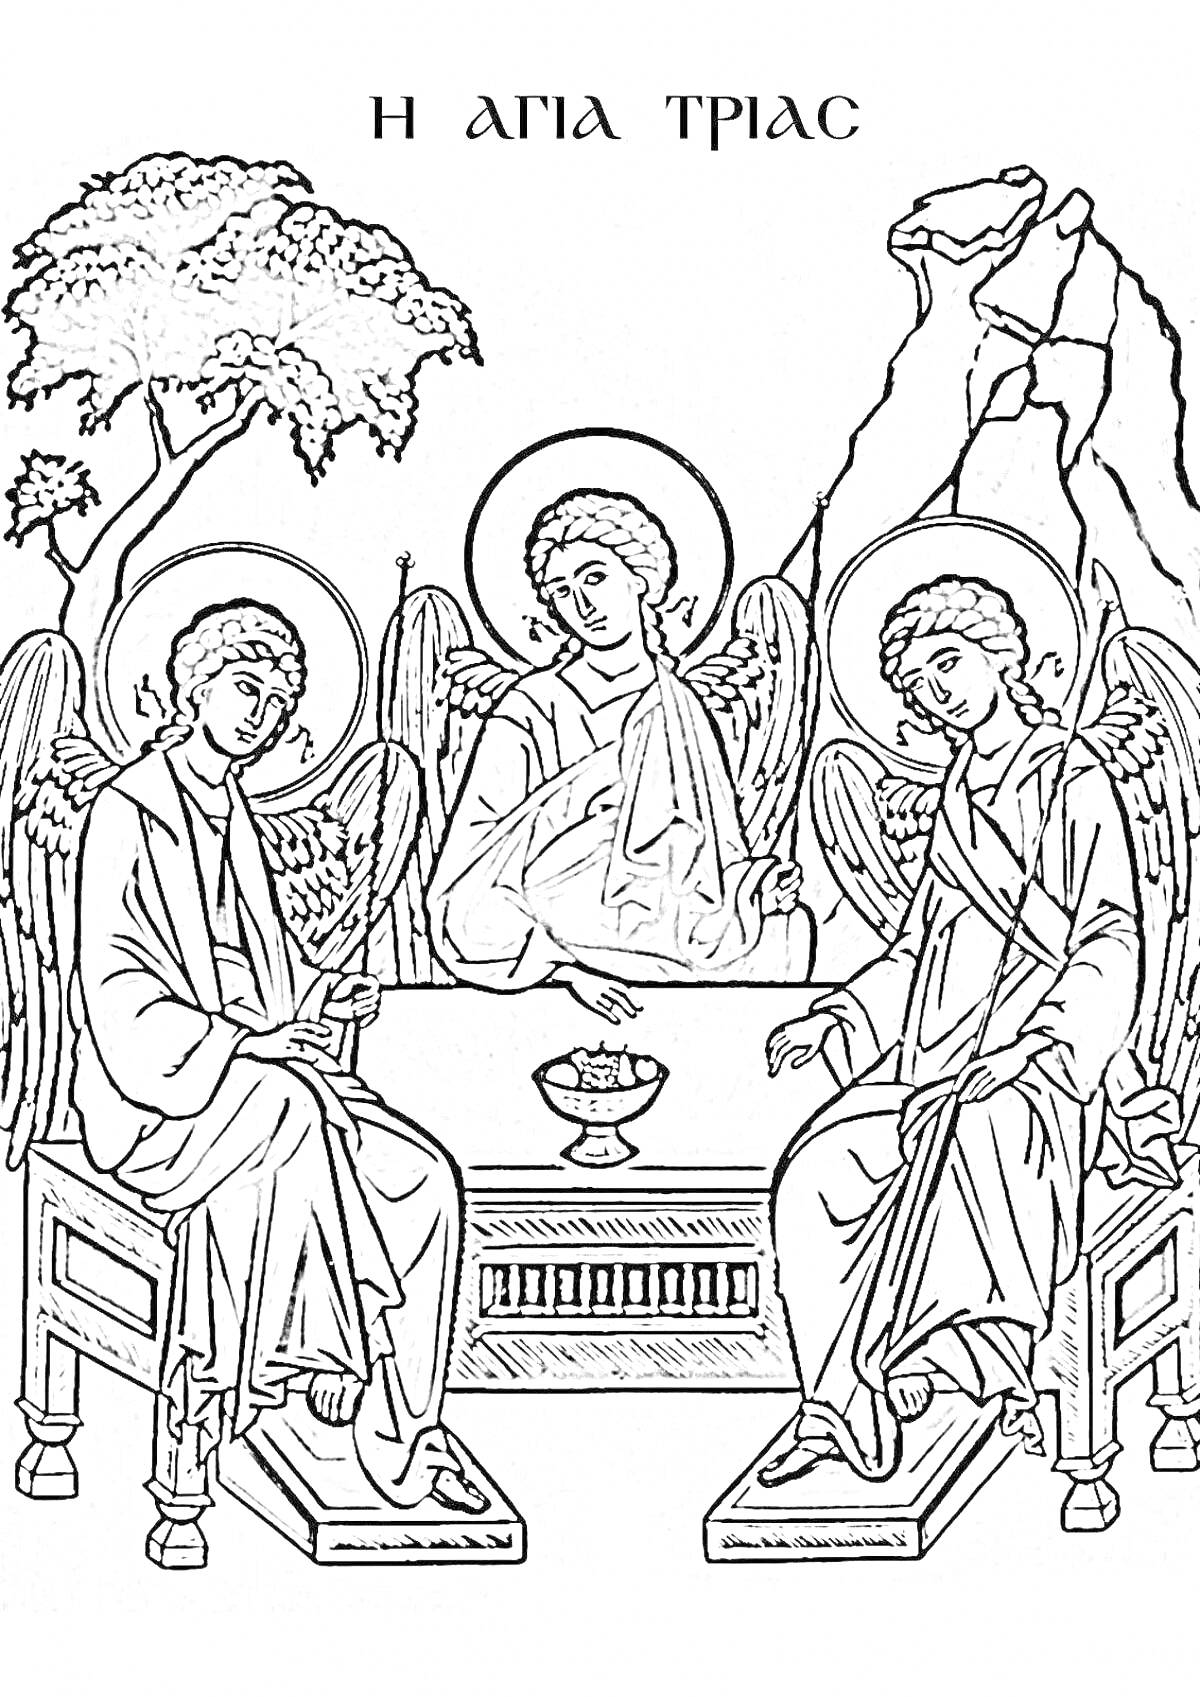 Раскраска Троица - три ангела за столом, дерево и гора